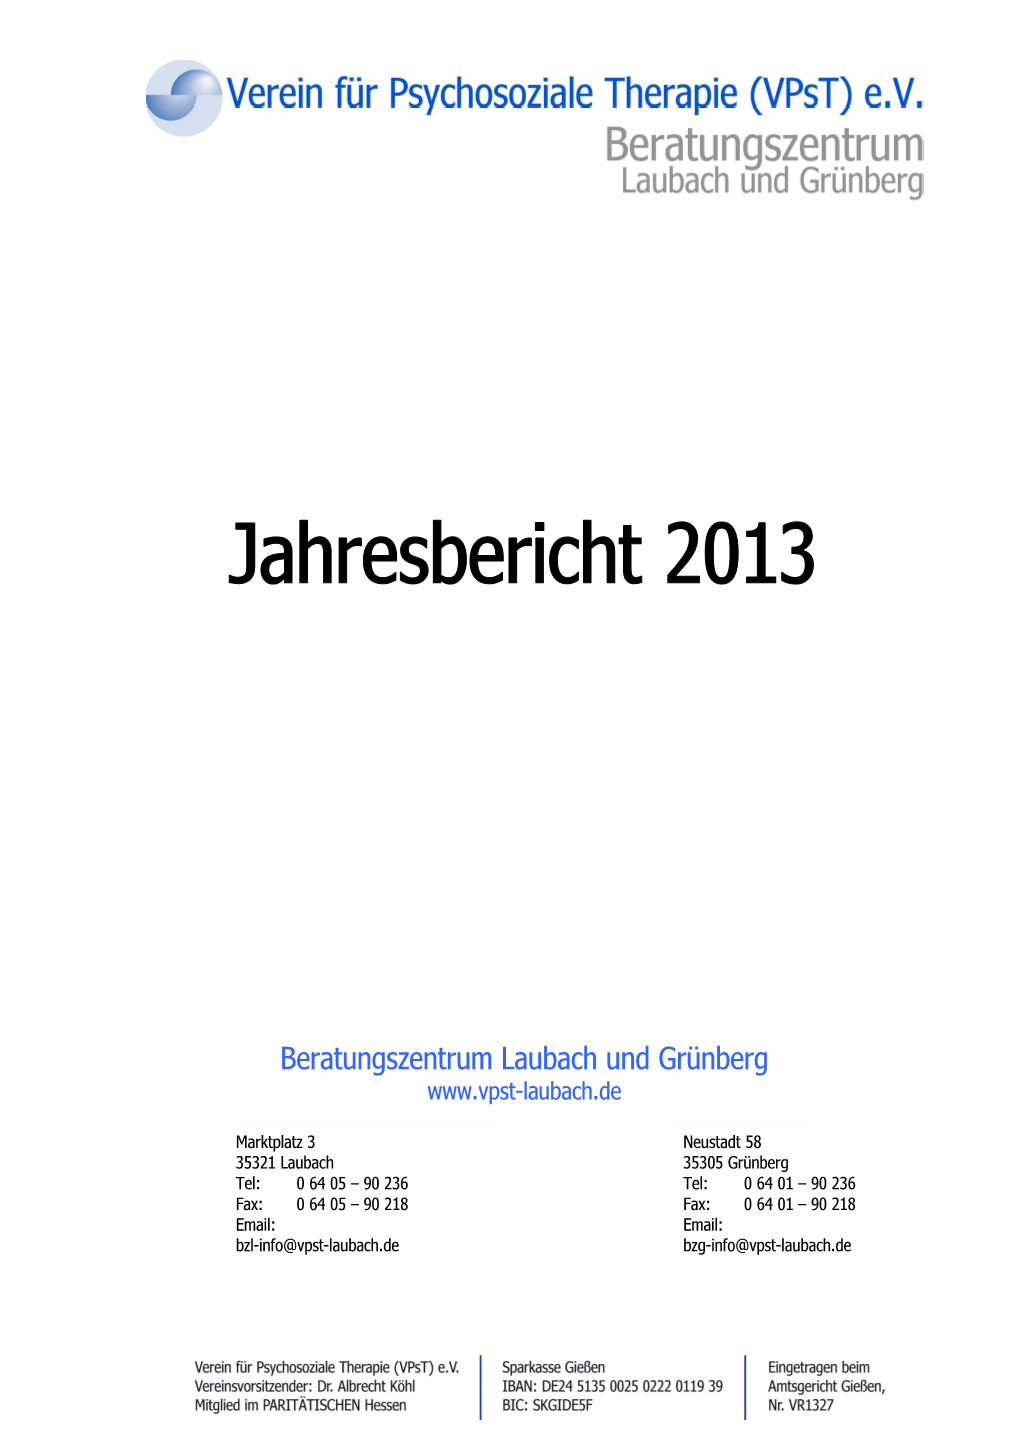 Jahresbericht Des Beratungszentrums Laubach Und Grünberg 2013